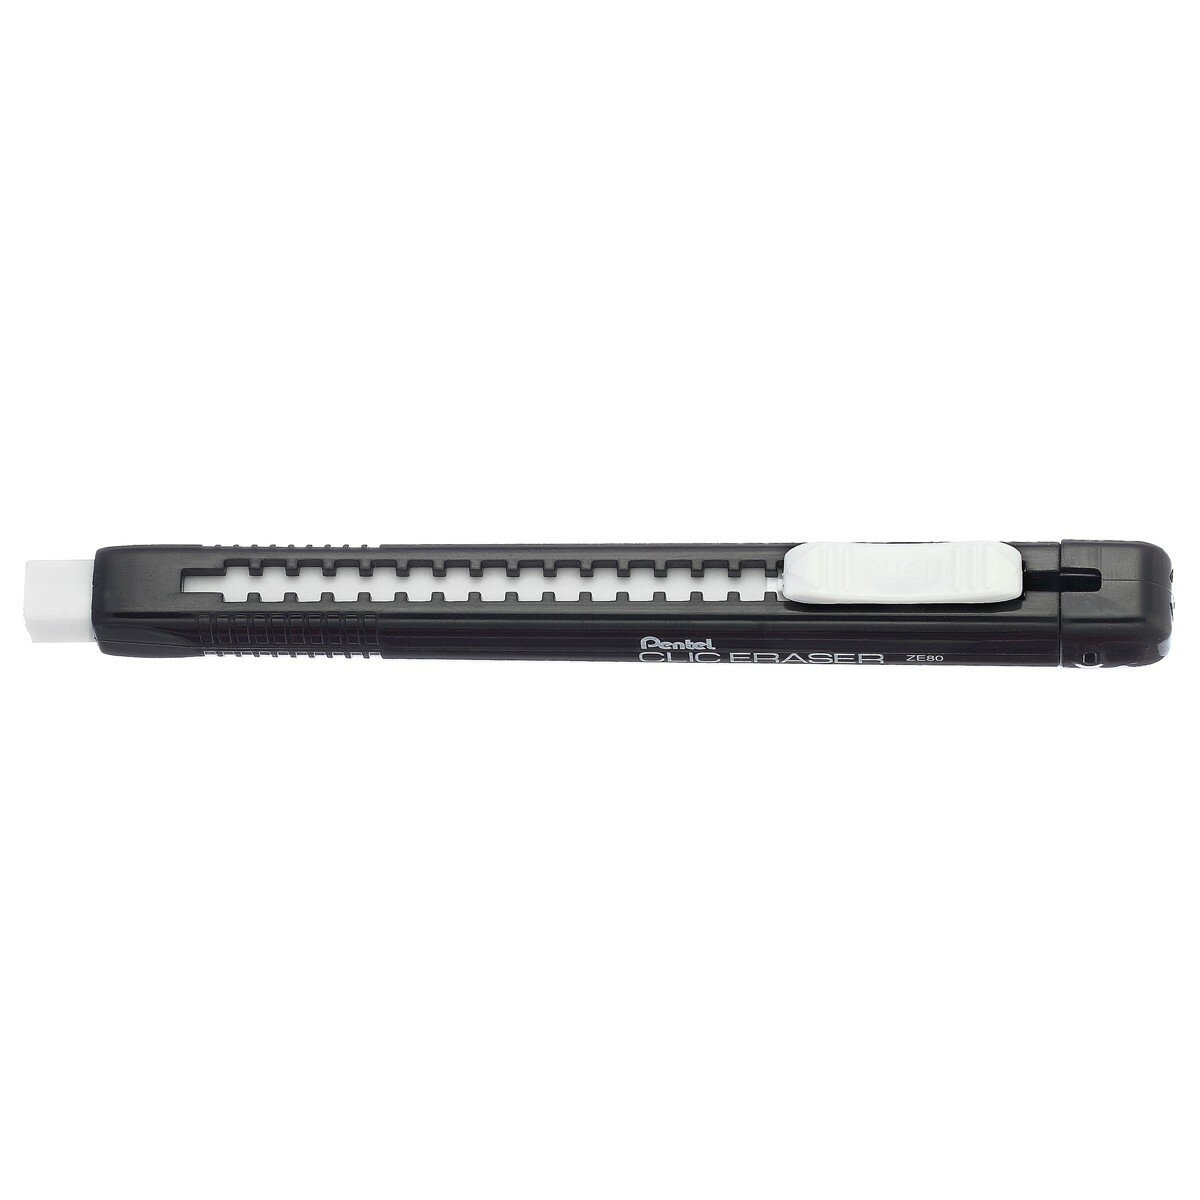 Pentel Ластик-карандаш Clic Eraser 12 шт. ZE80-A черный корпус